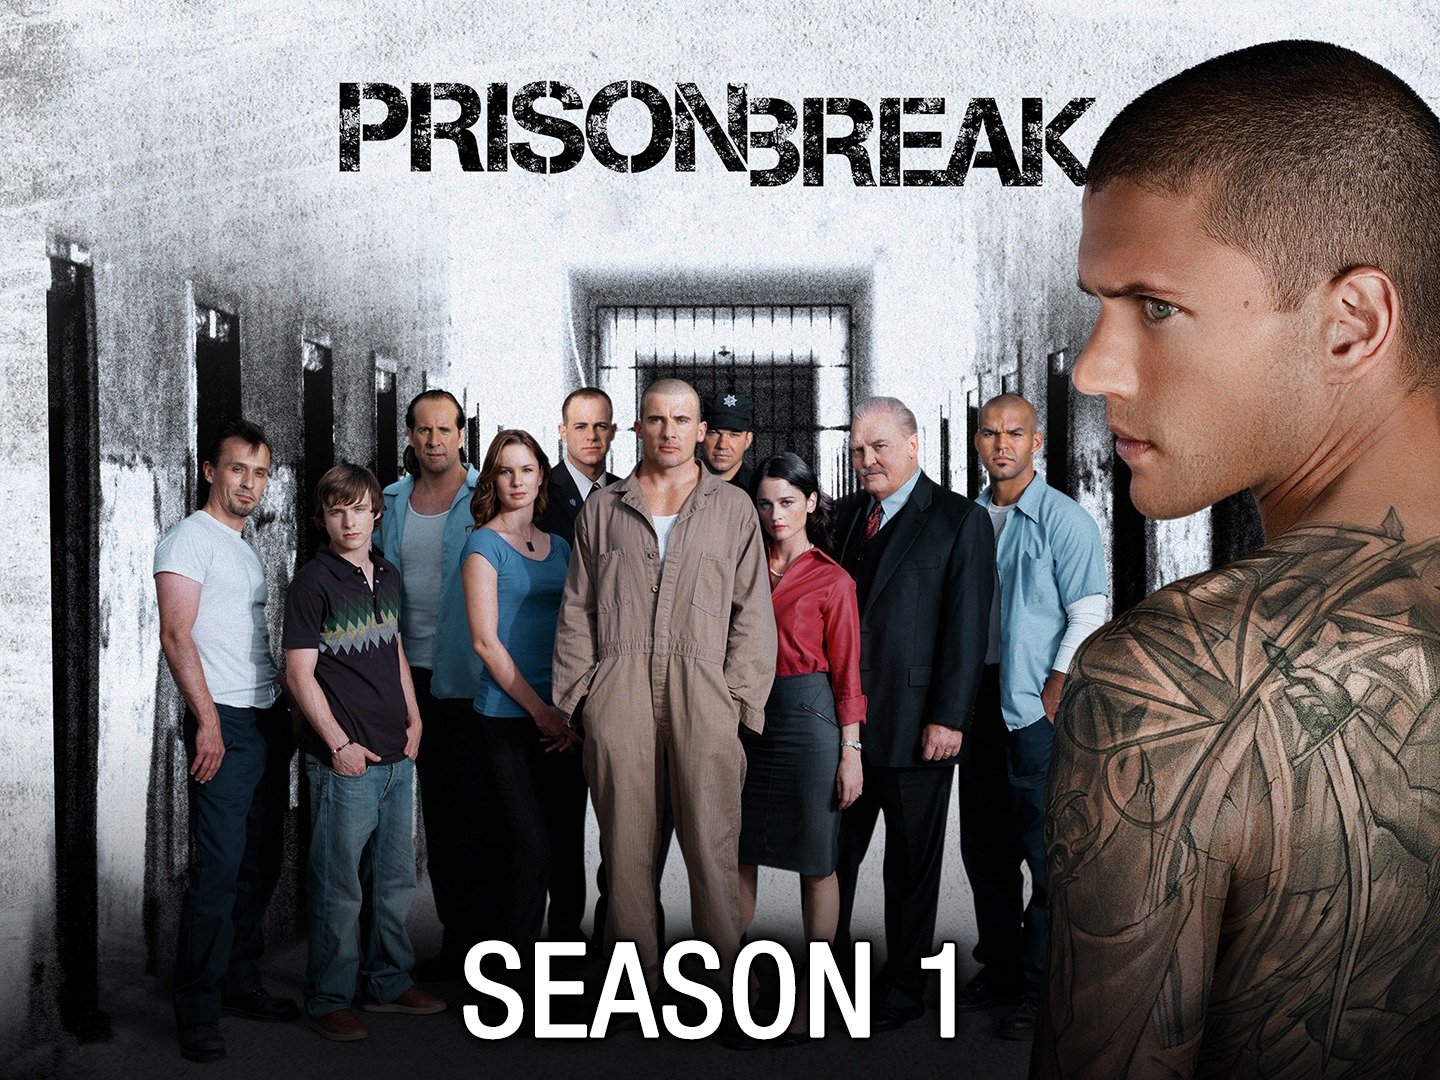 prison break season 1 full cast